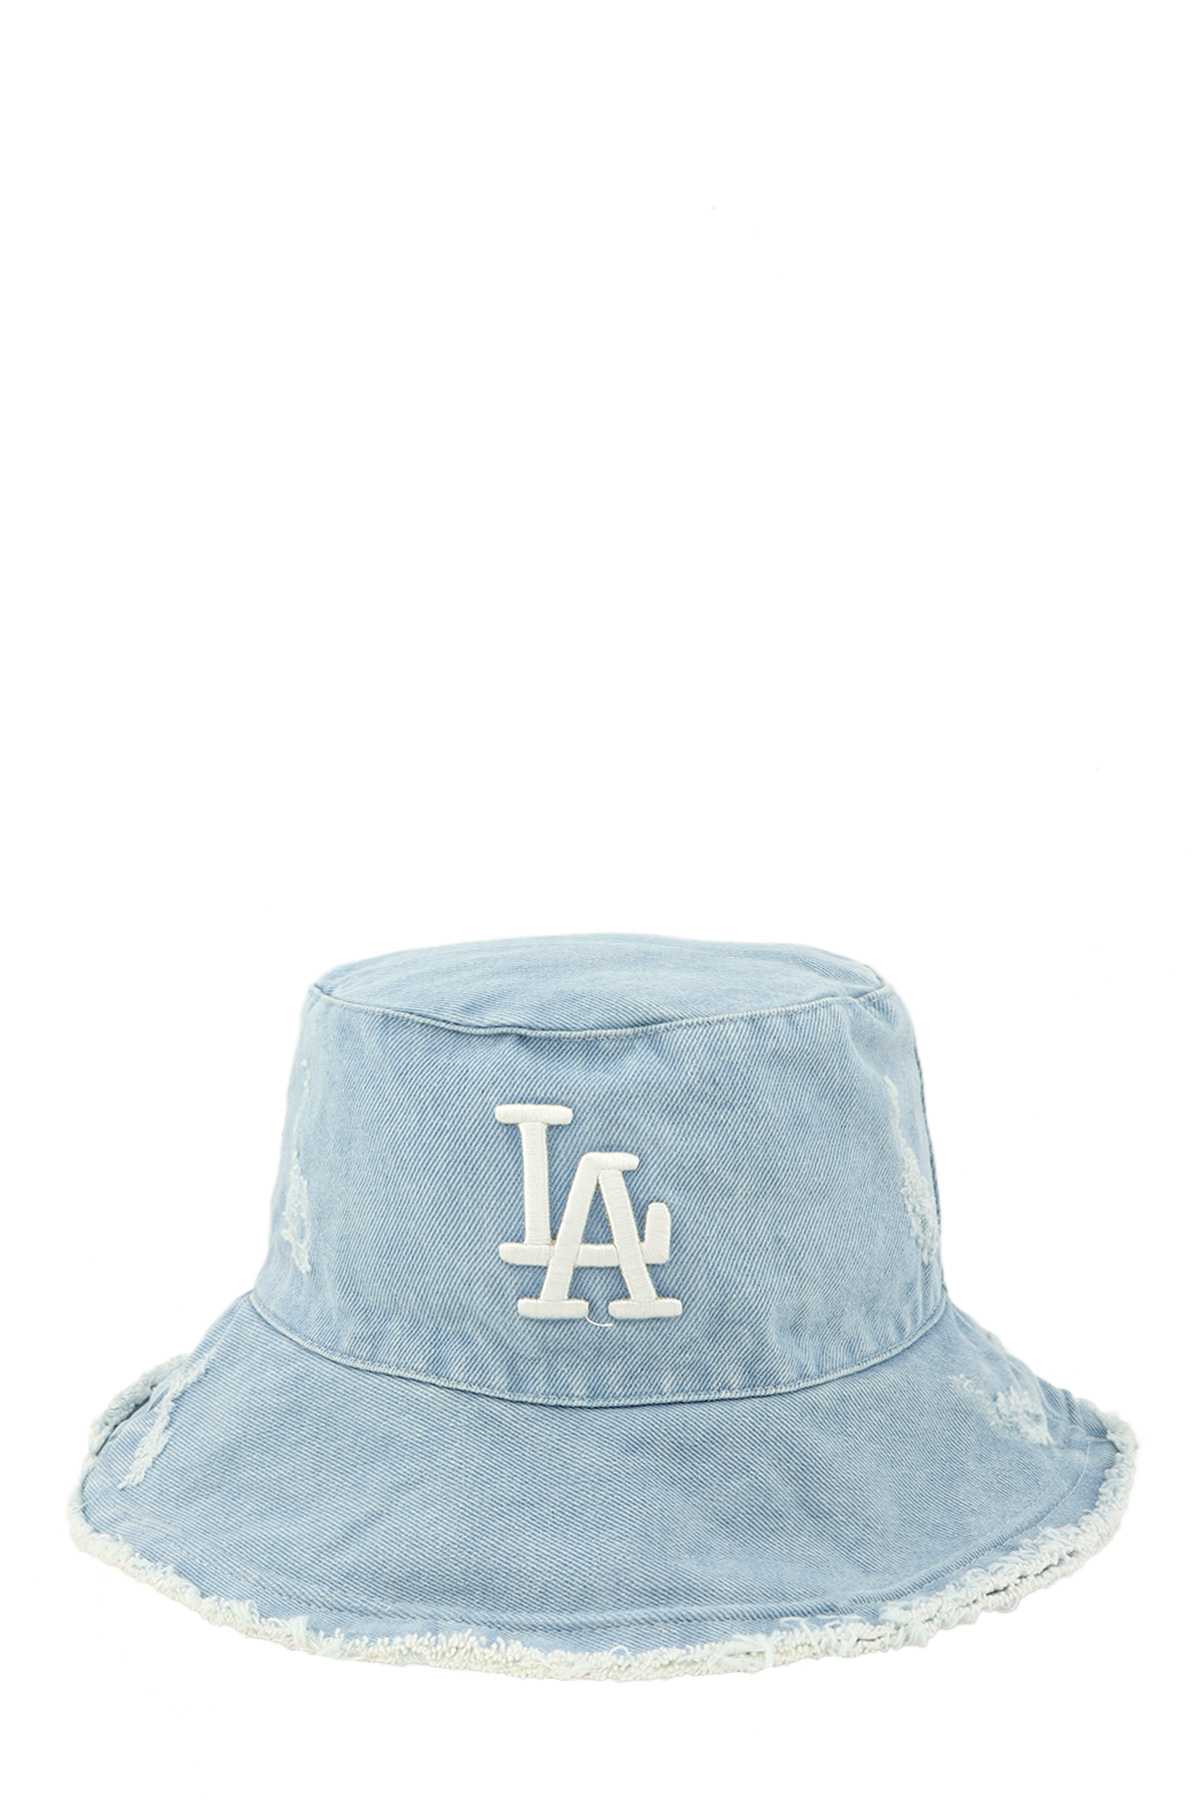 Distressed Denim LA Bucket Hat with Wired Brim